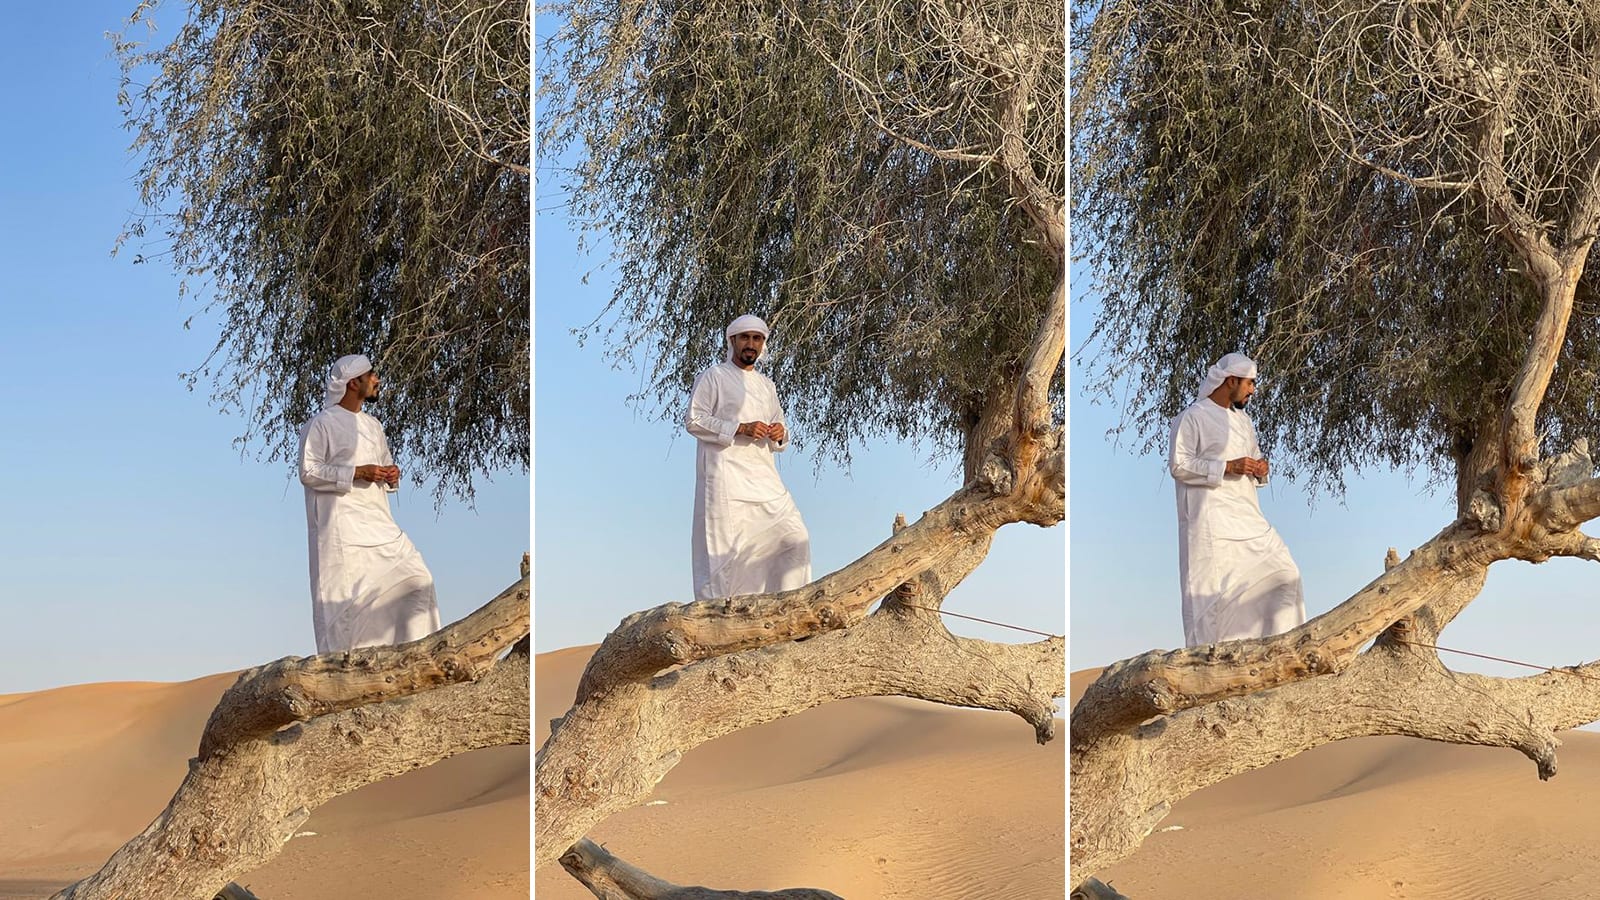 تجربة تقليدية بصحراء أبوظبي تقدم لمحة سحرية حياة بدو الإمارات